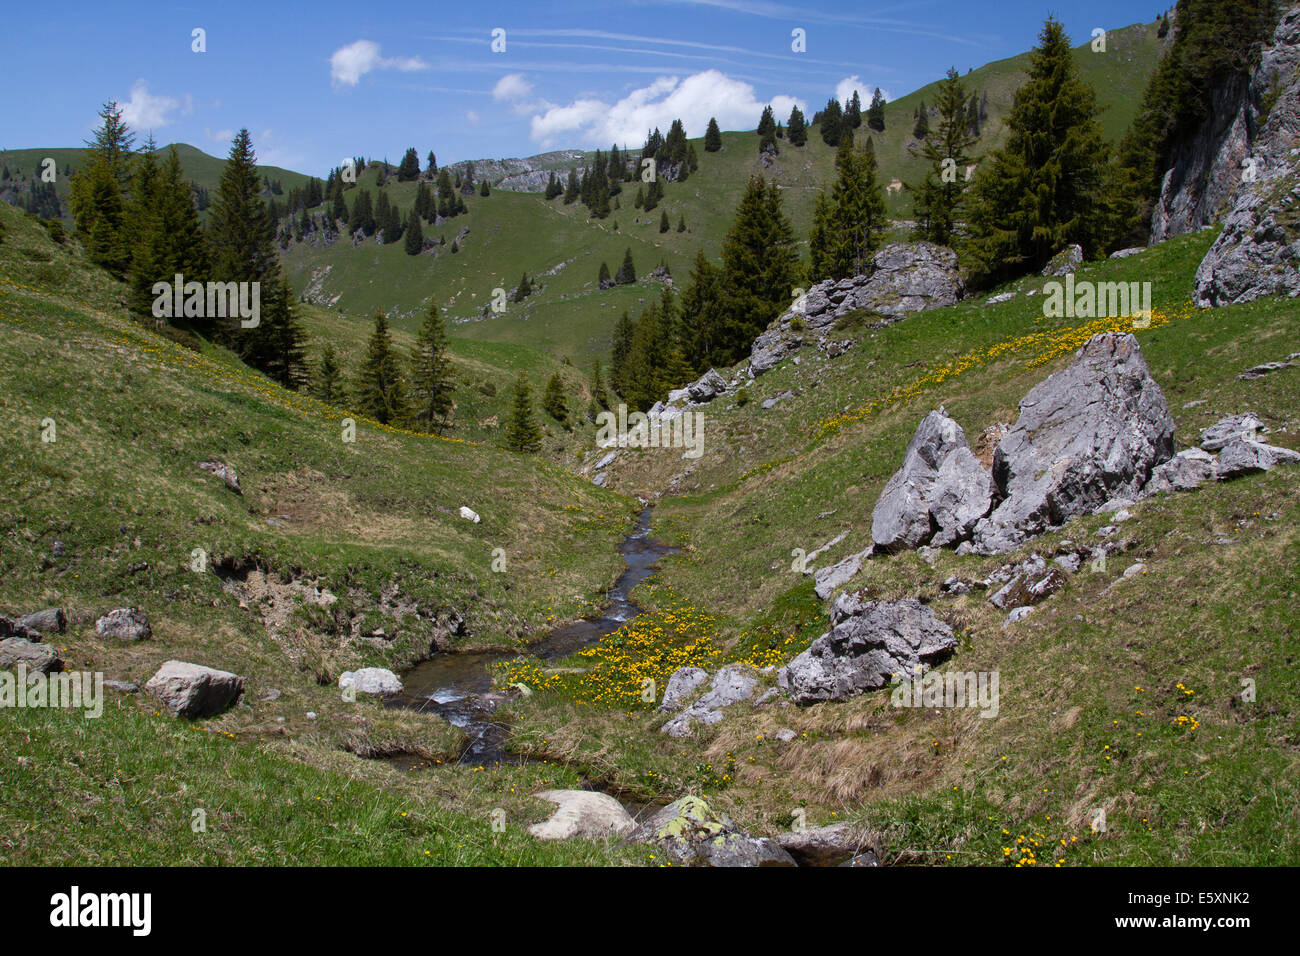 Flusso di piccole dimensioni in una valle alpina Foto Stock